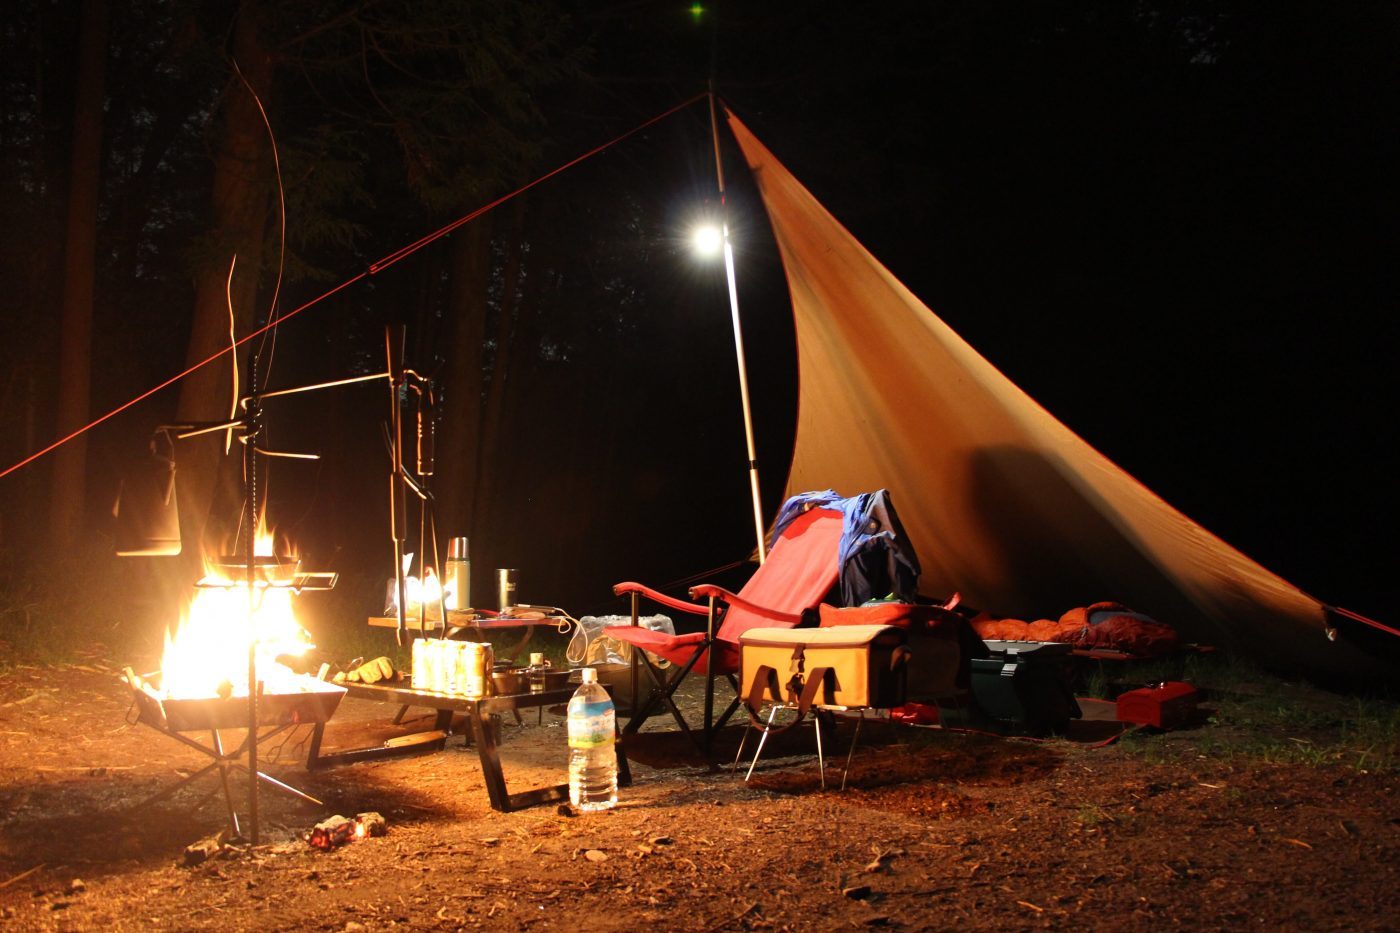 キャンプの基礎知識 キャンプで焚き火をするときの注意点まとめ キャンプ初心者向け総合情報ブログ Hyper Camp Creators